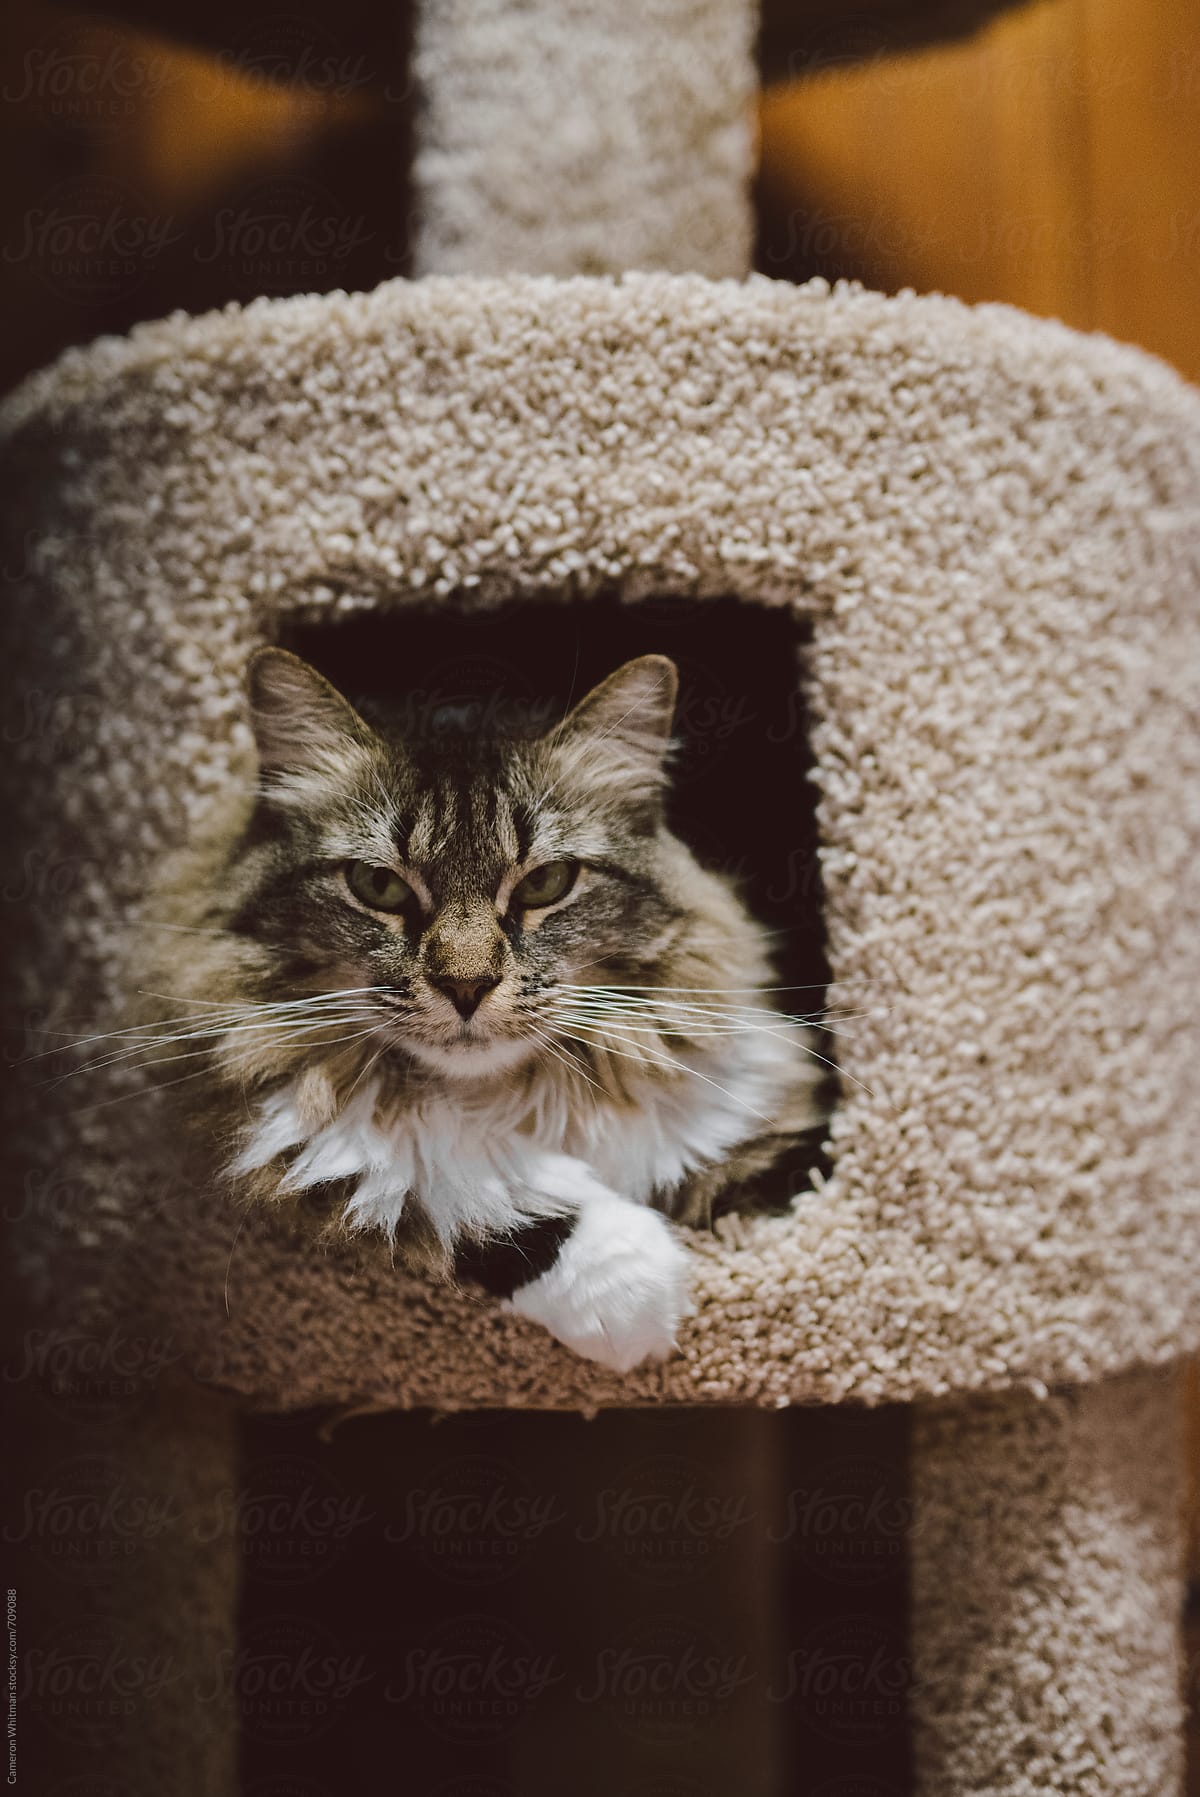 Cat portrait in her scratch tower